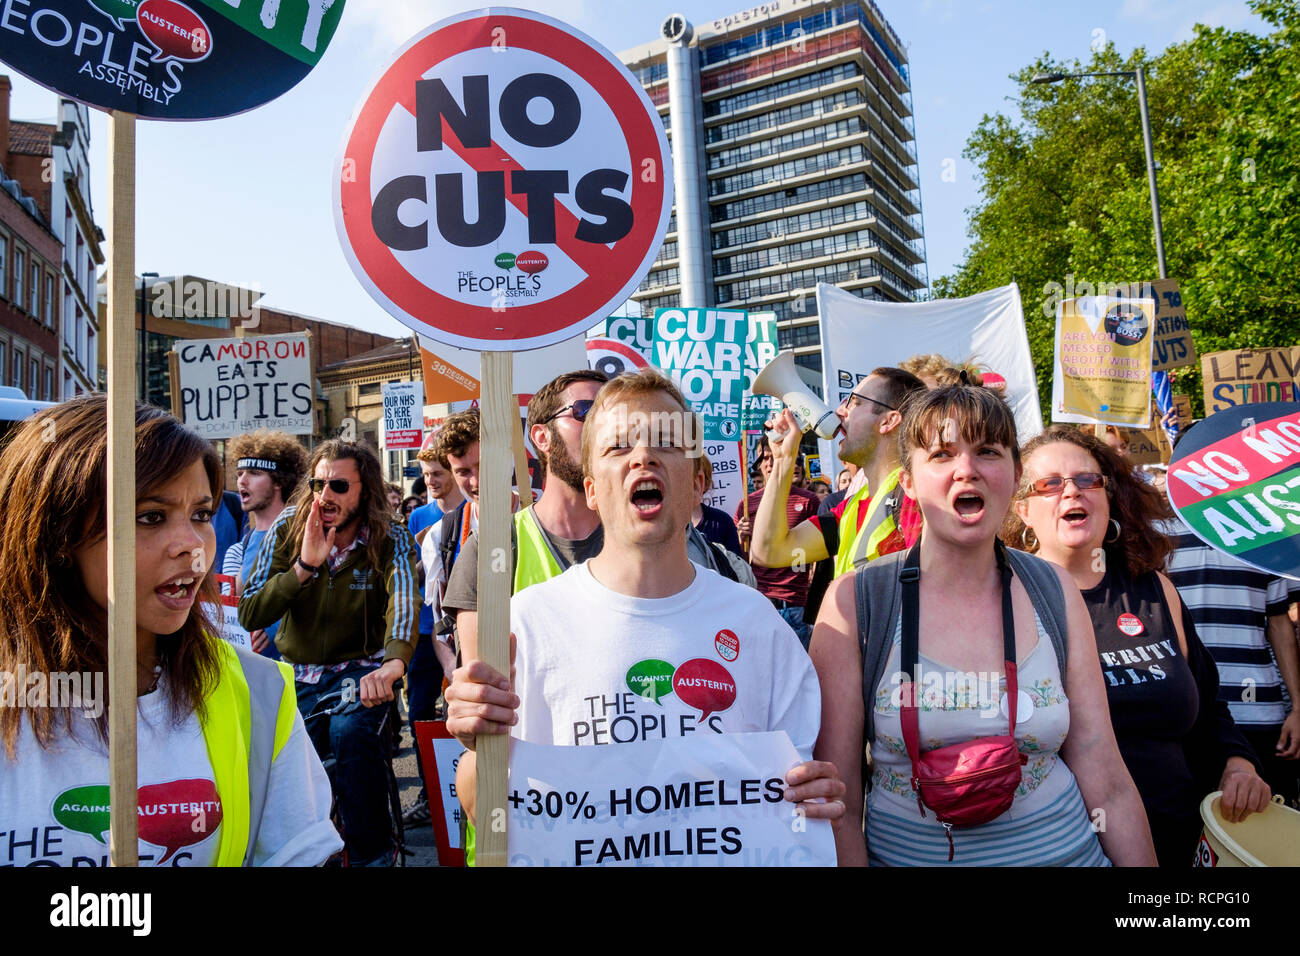 Los manifestantes llevaban carteles anti-austeridad y signos son retratada tomando parte en una marcha de protesta contra la austeridad y la demostración en Bristol. Foto de stock